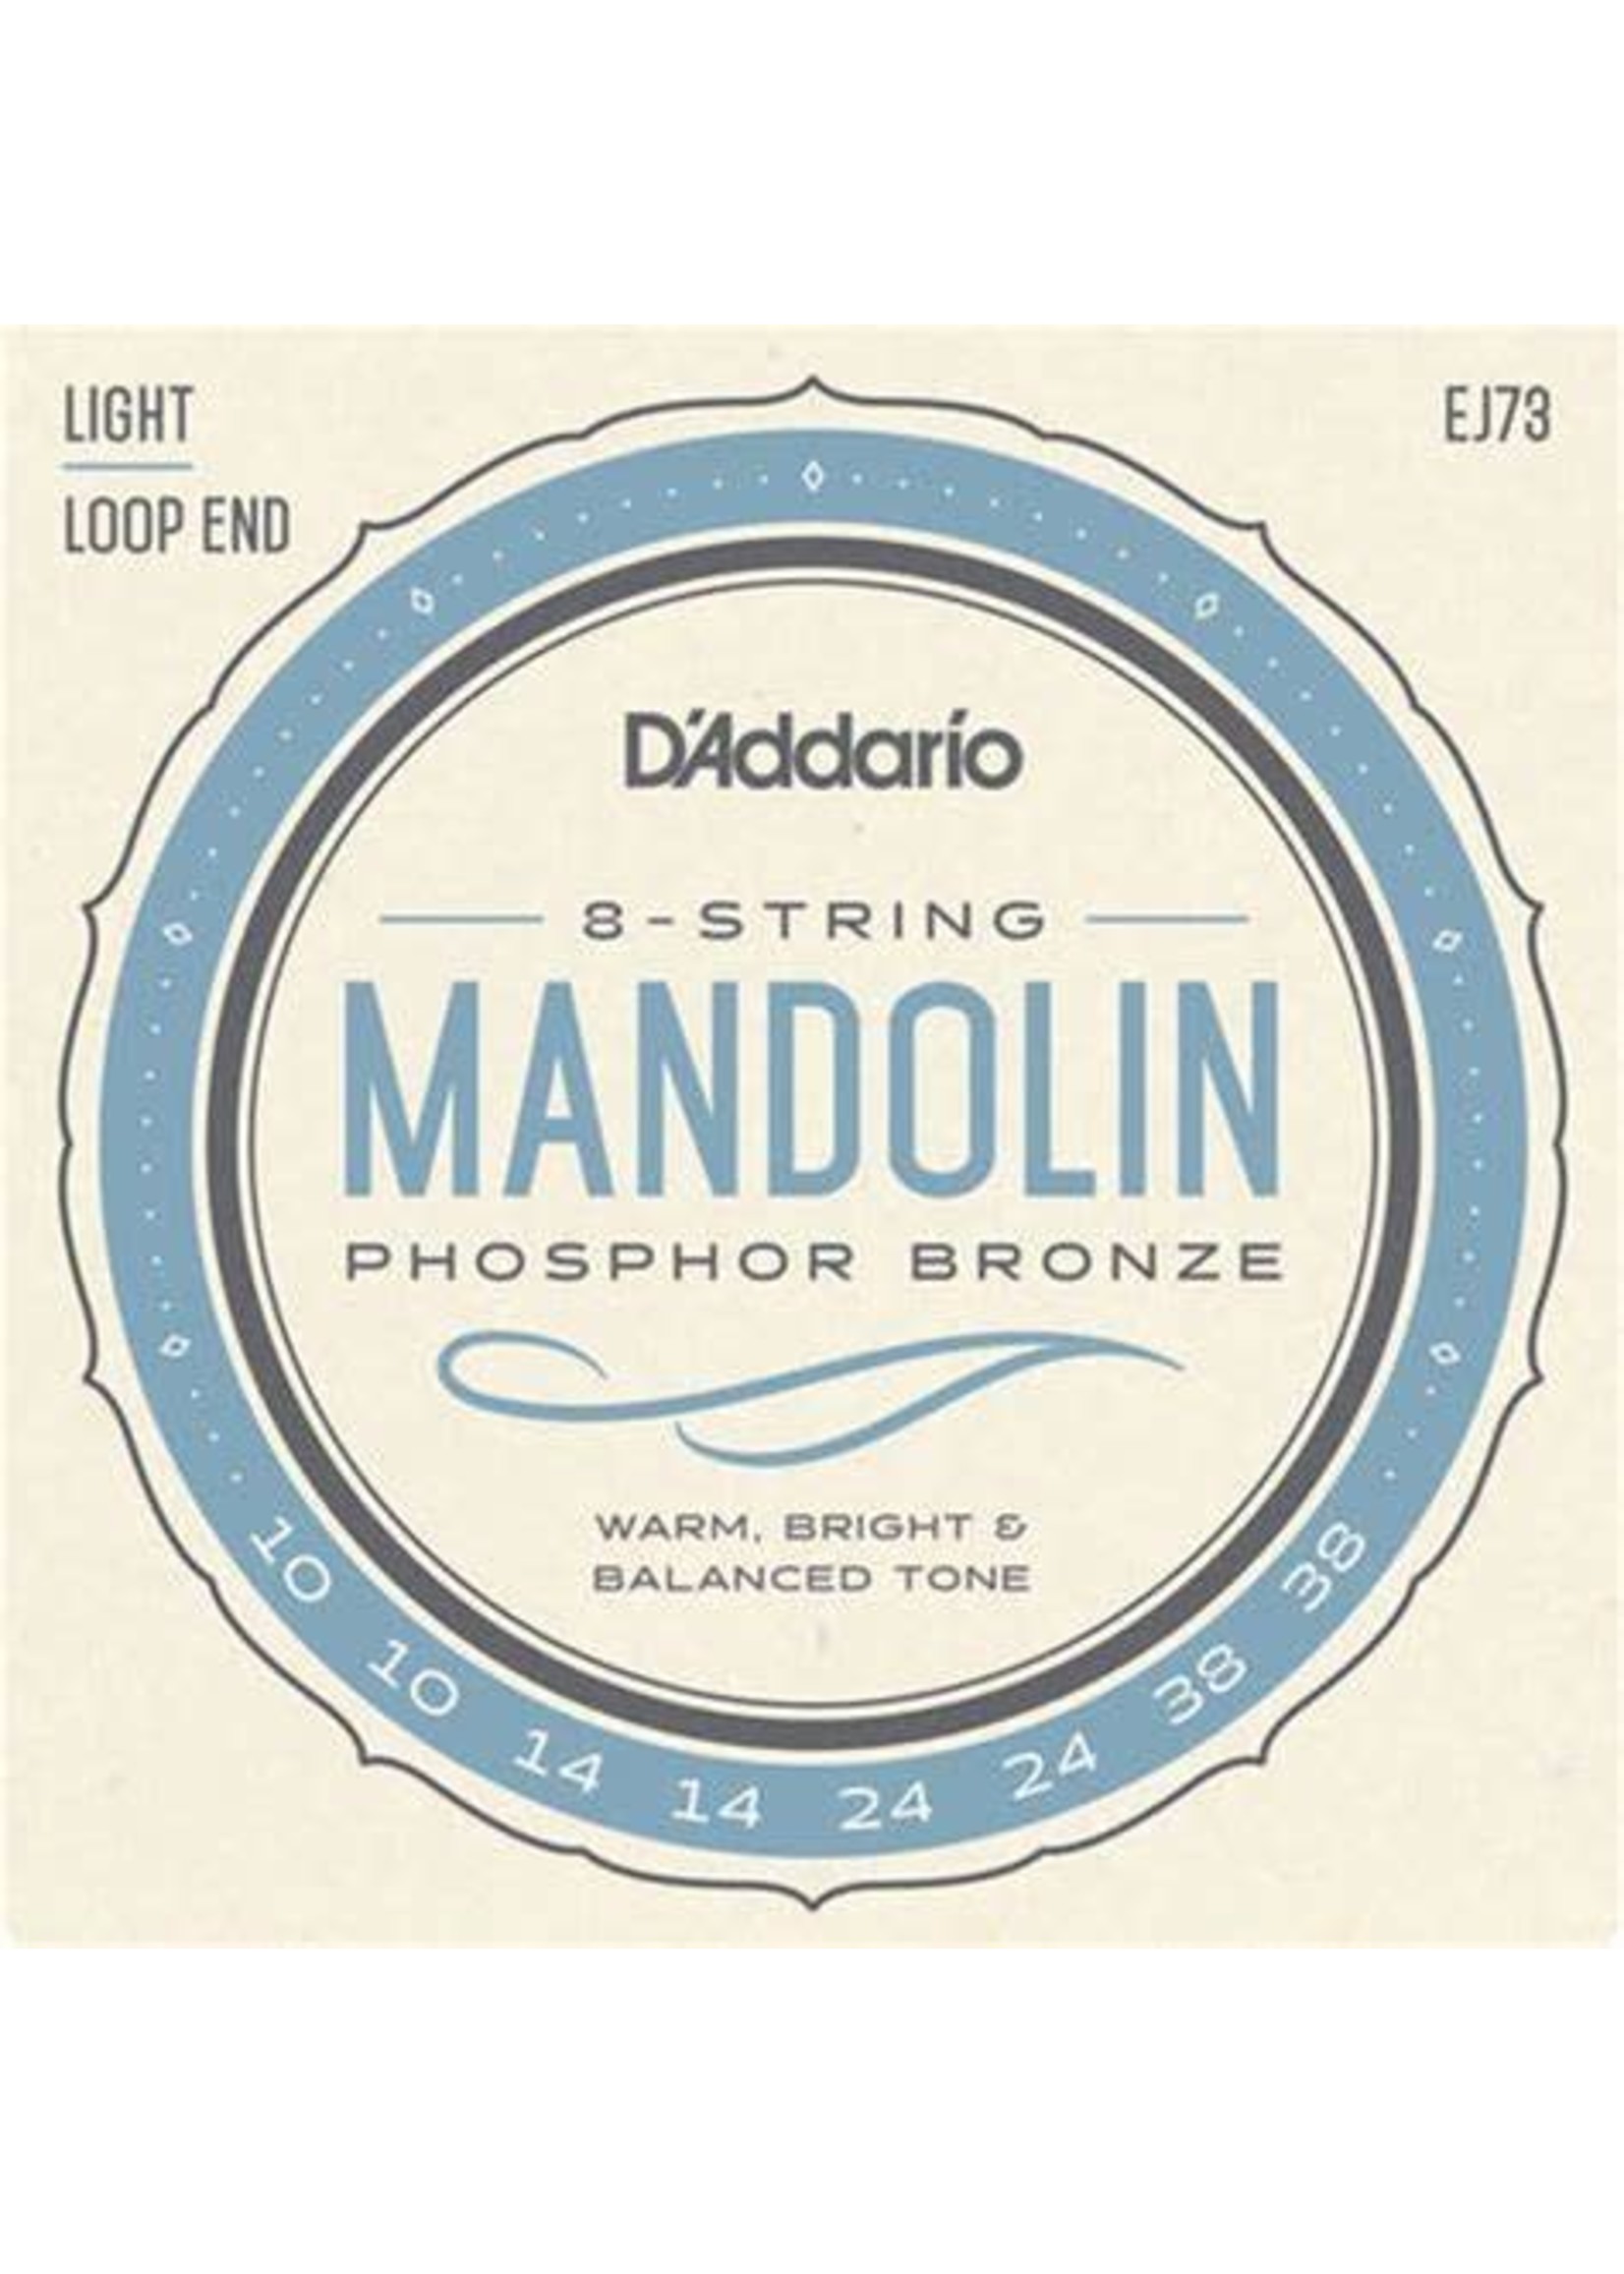 D'Addario D'Addario EJ73 8 string Mandolin strings - lite019954321833